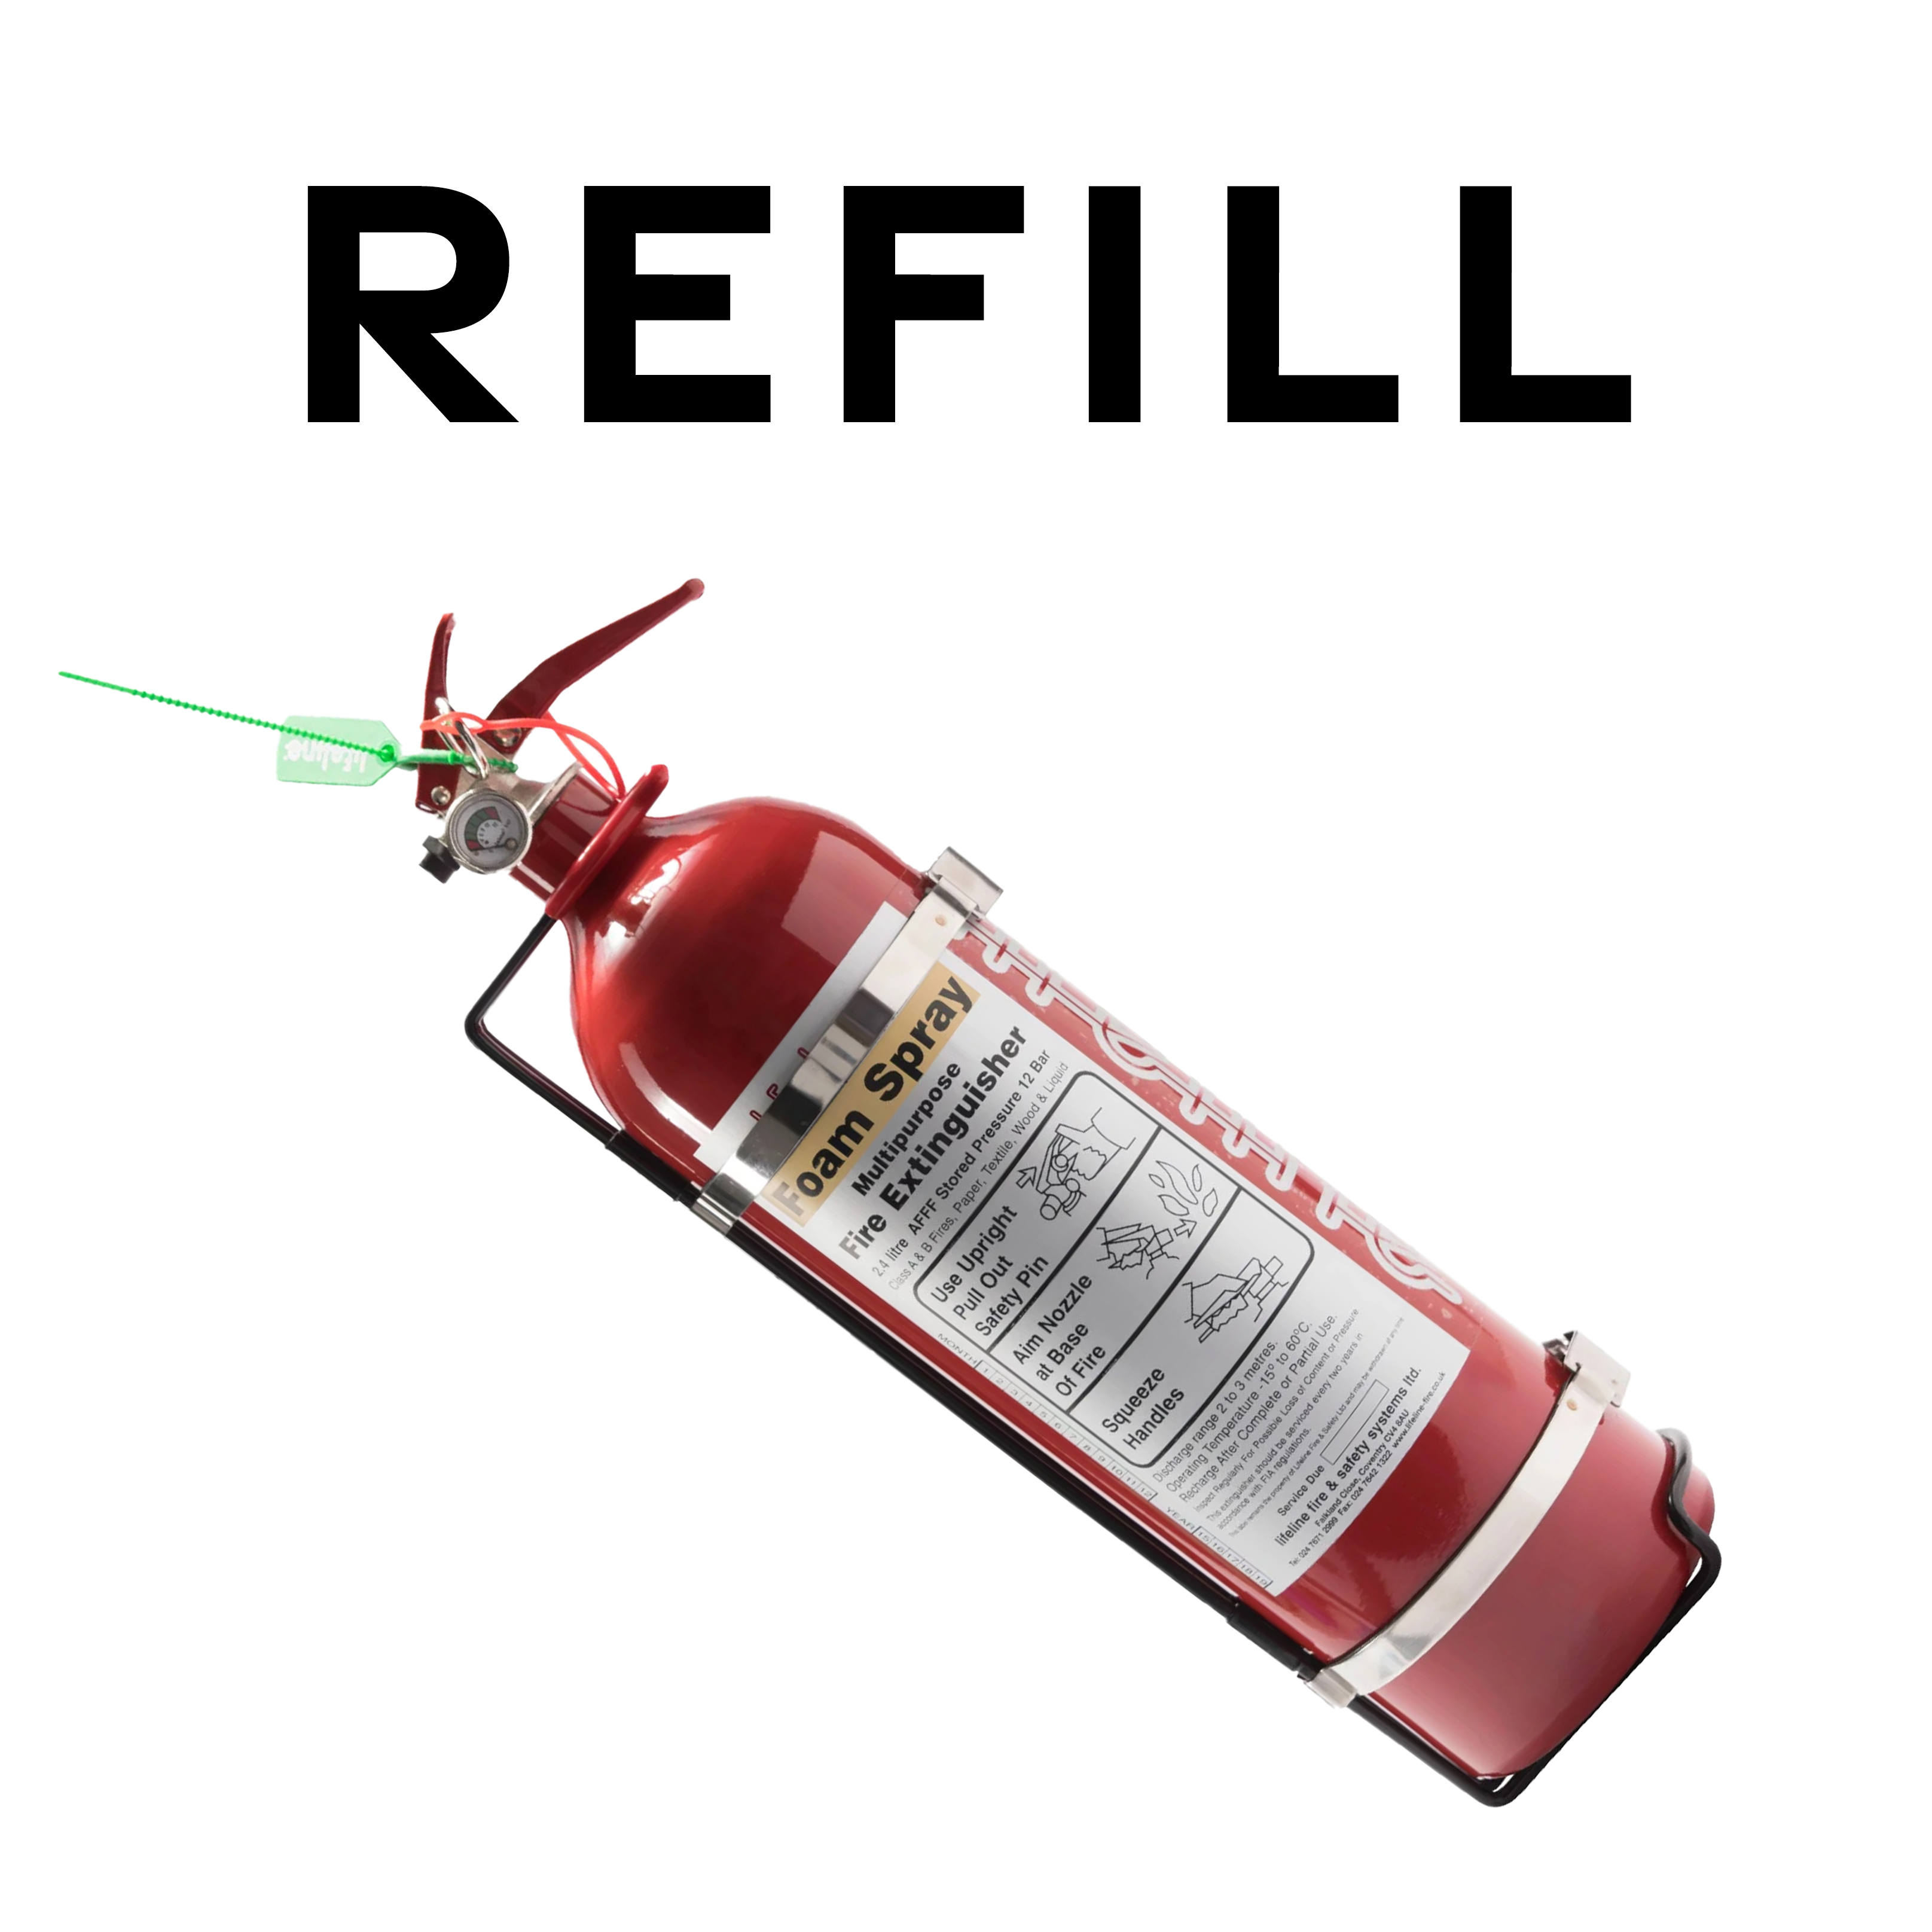 Refill - Lifeline 2.4ltr AFFF Handheld